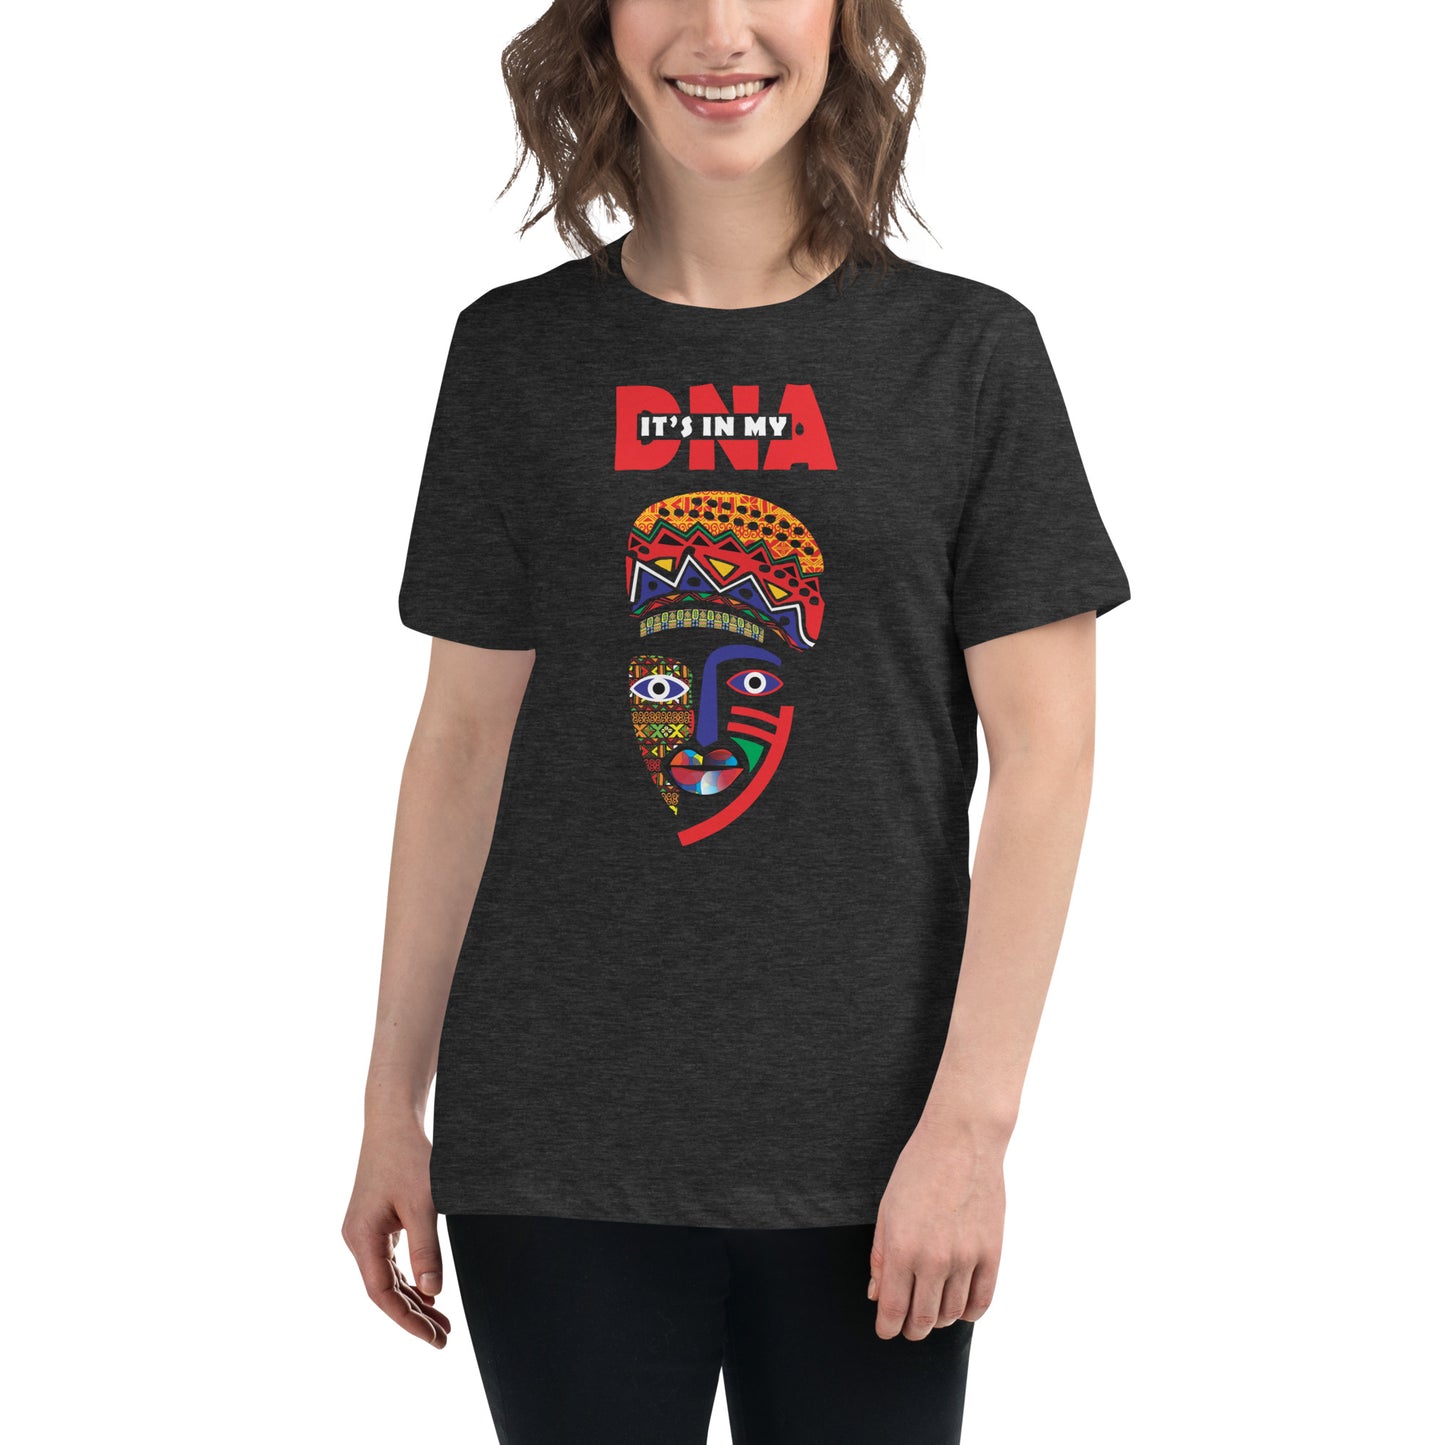 Loose DNA T-shirt